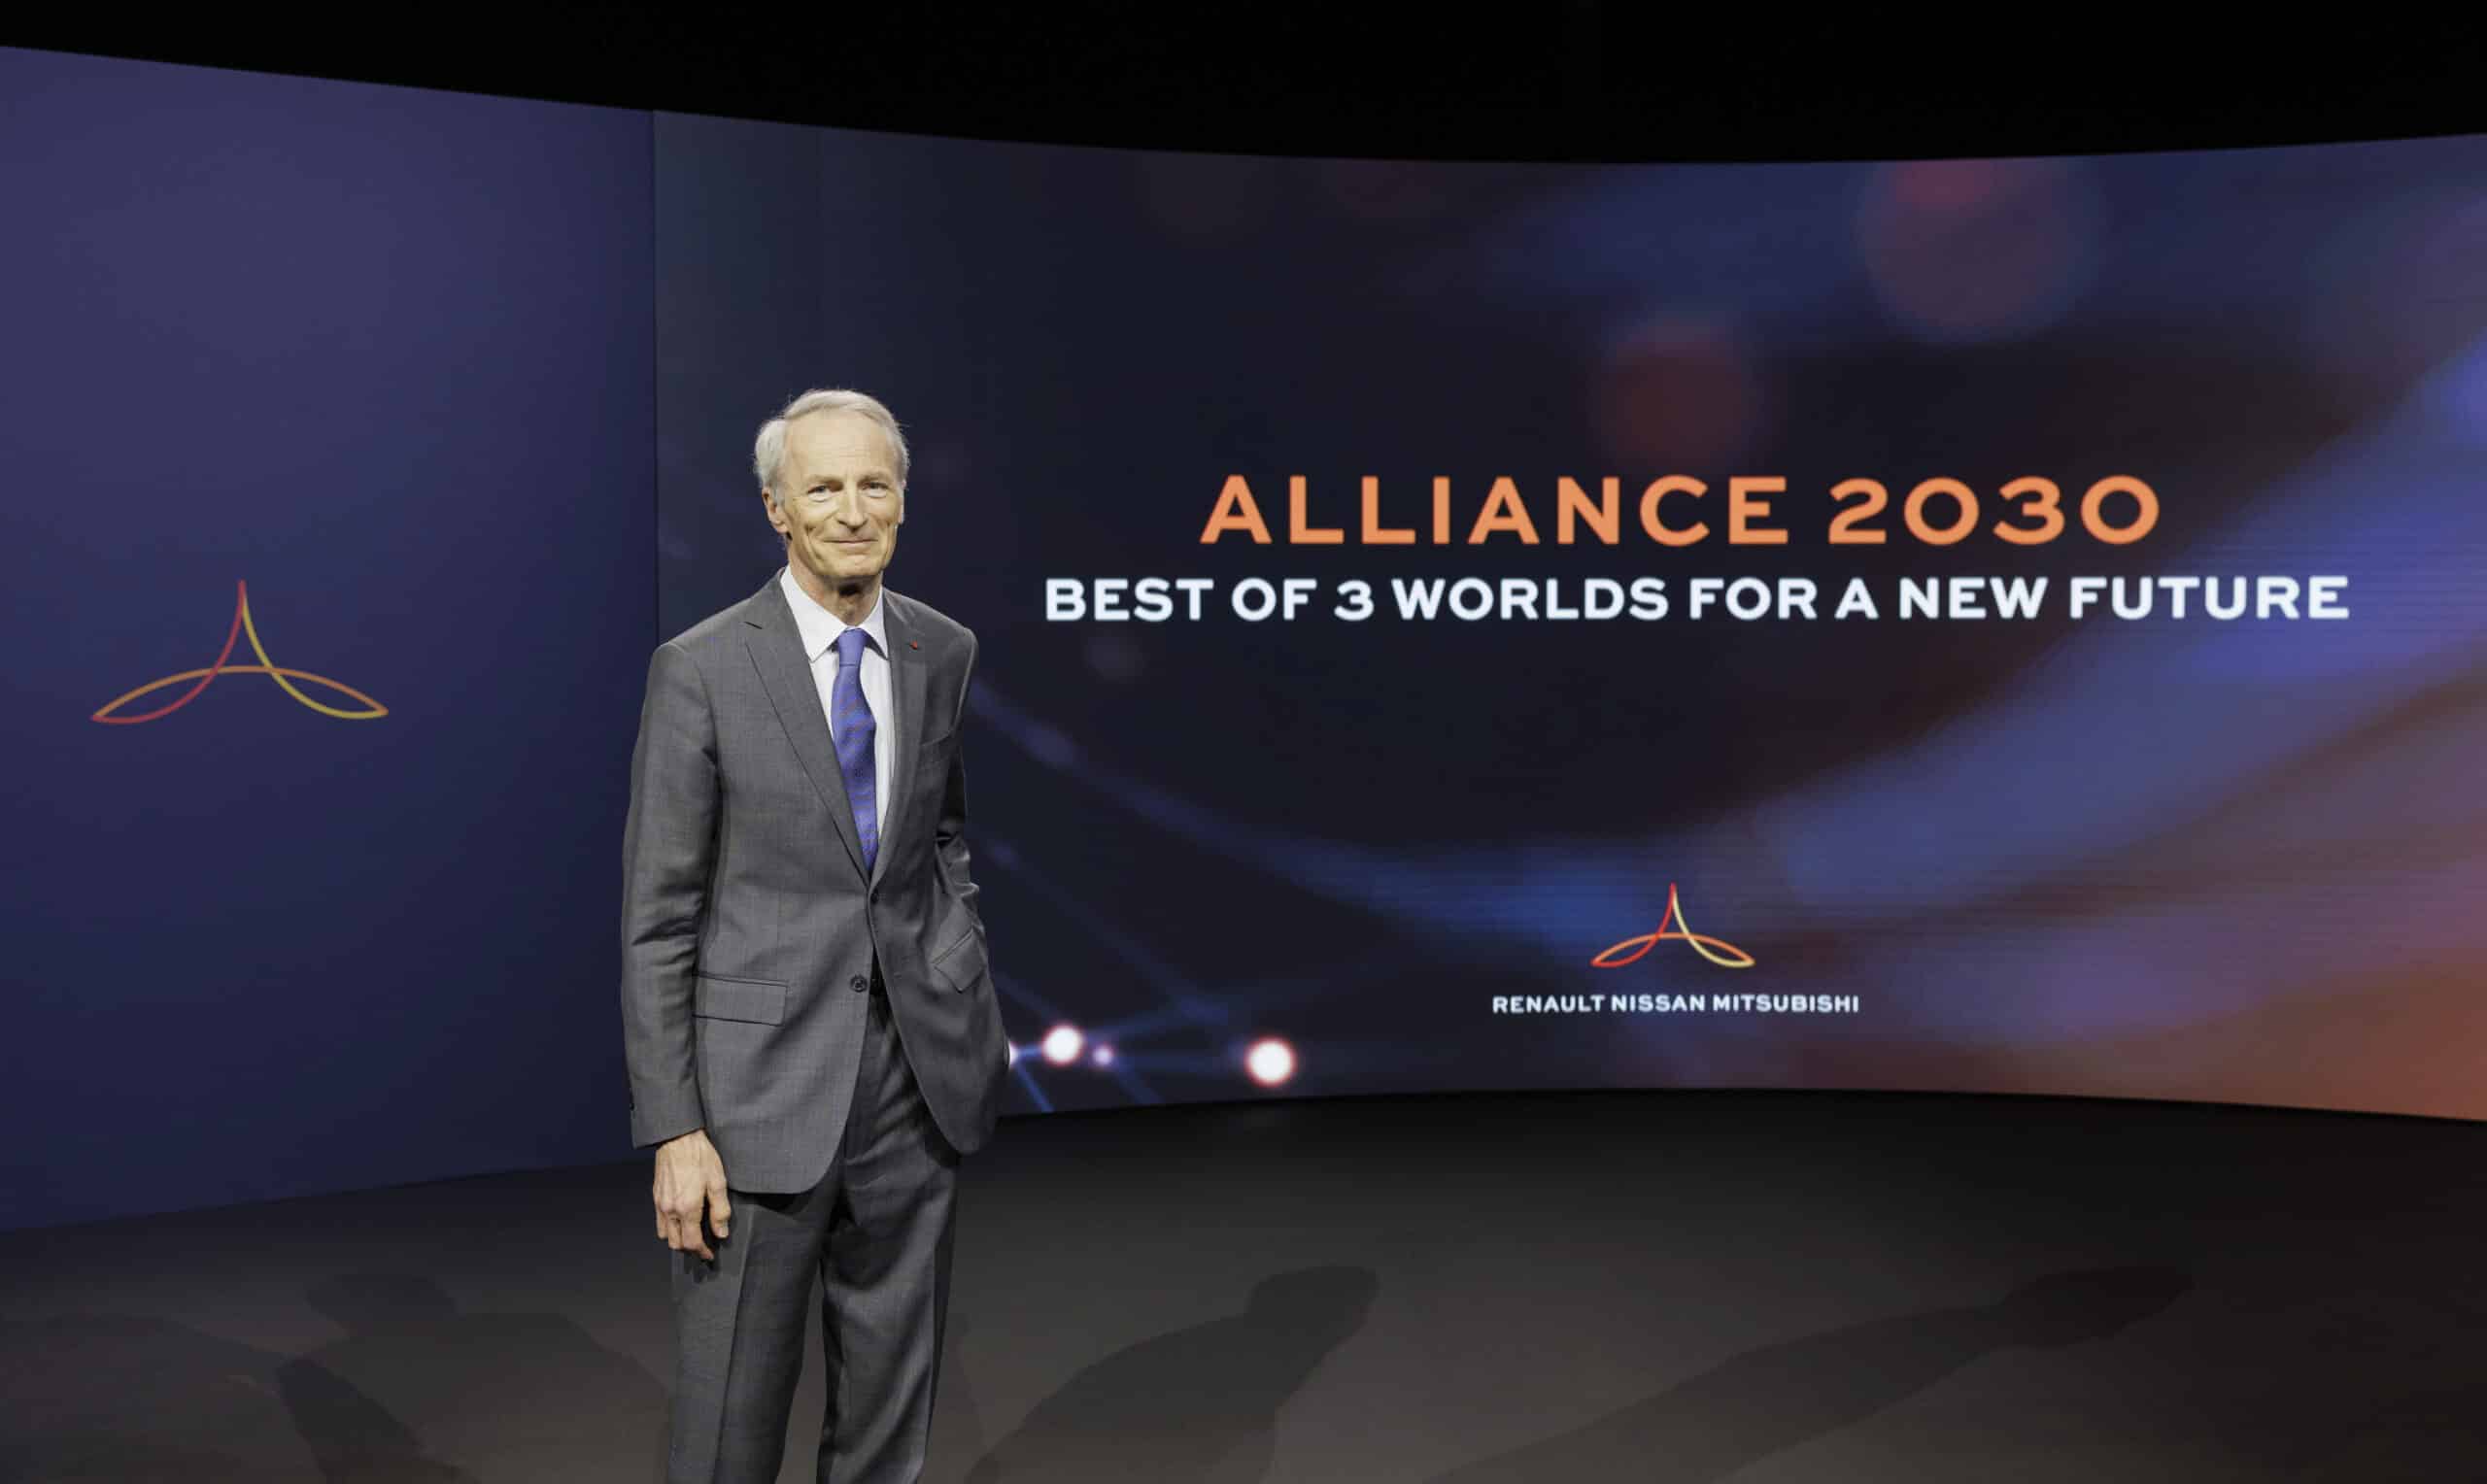 La alianza Renault Nissan Mitsubishi quiere construir un futuro mejor para los 3 mundos